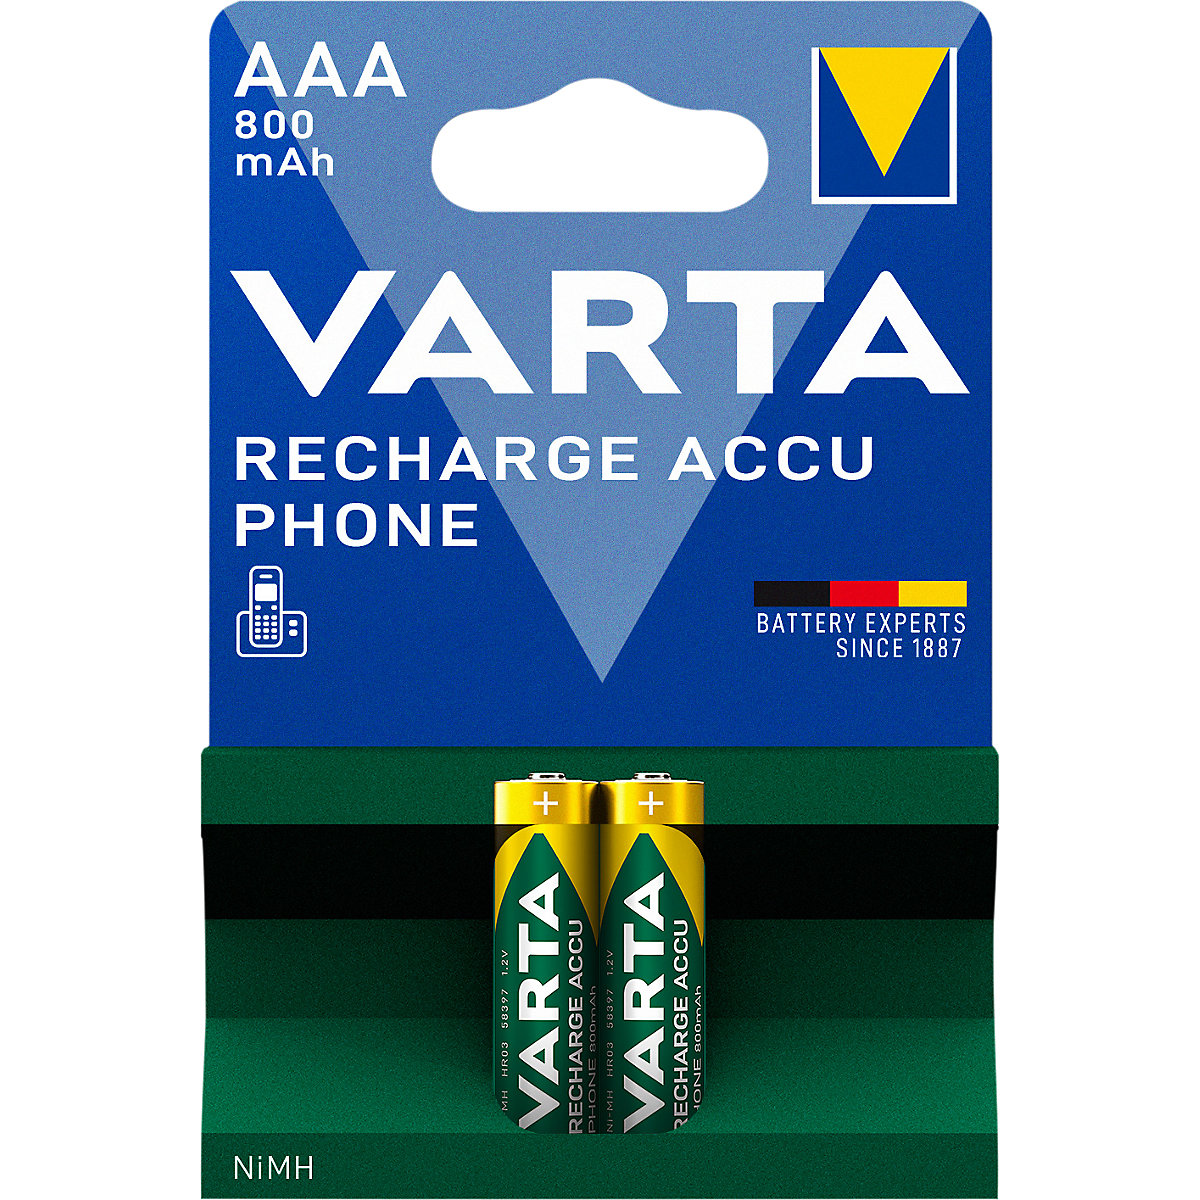 Accumulateur rechargeable pour téléphone – VARTA